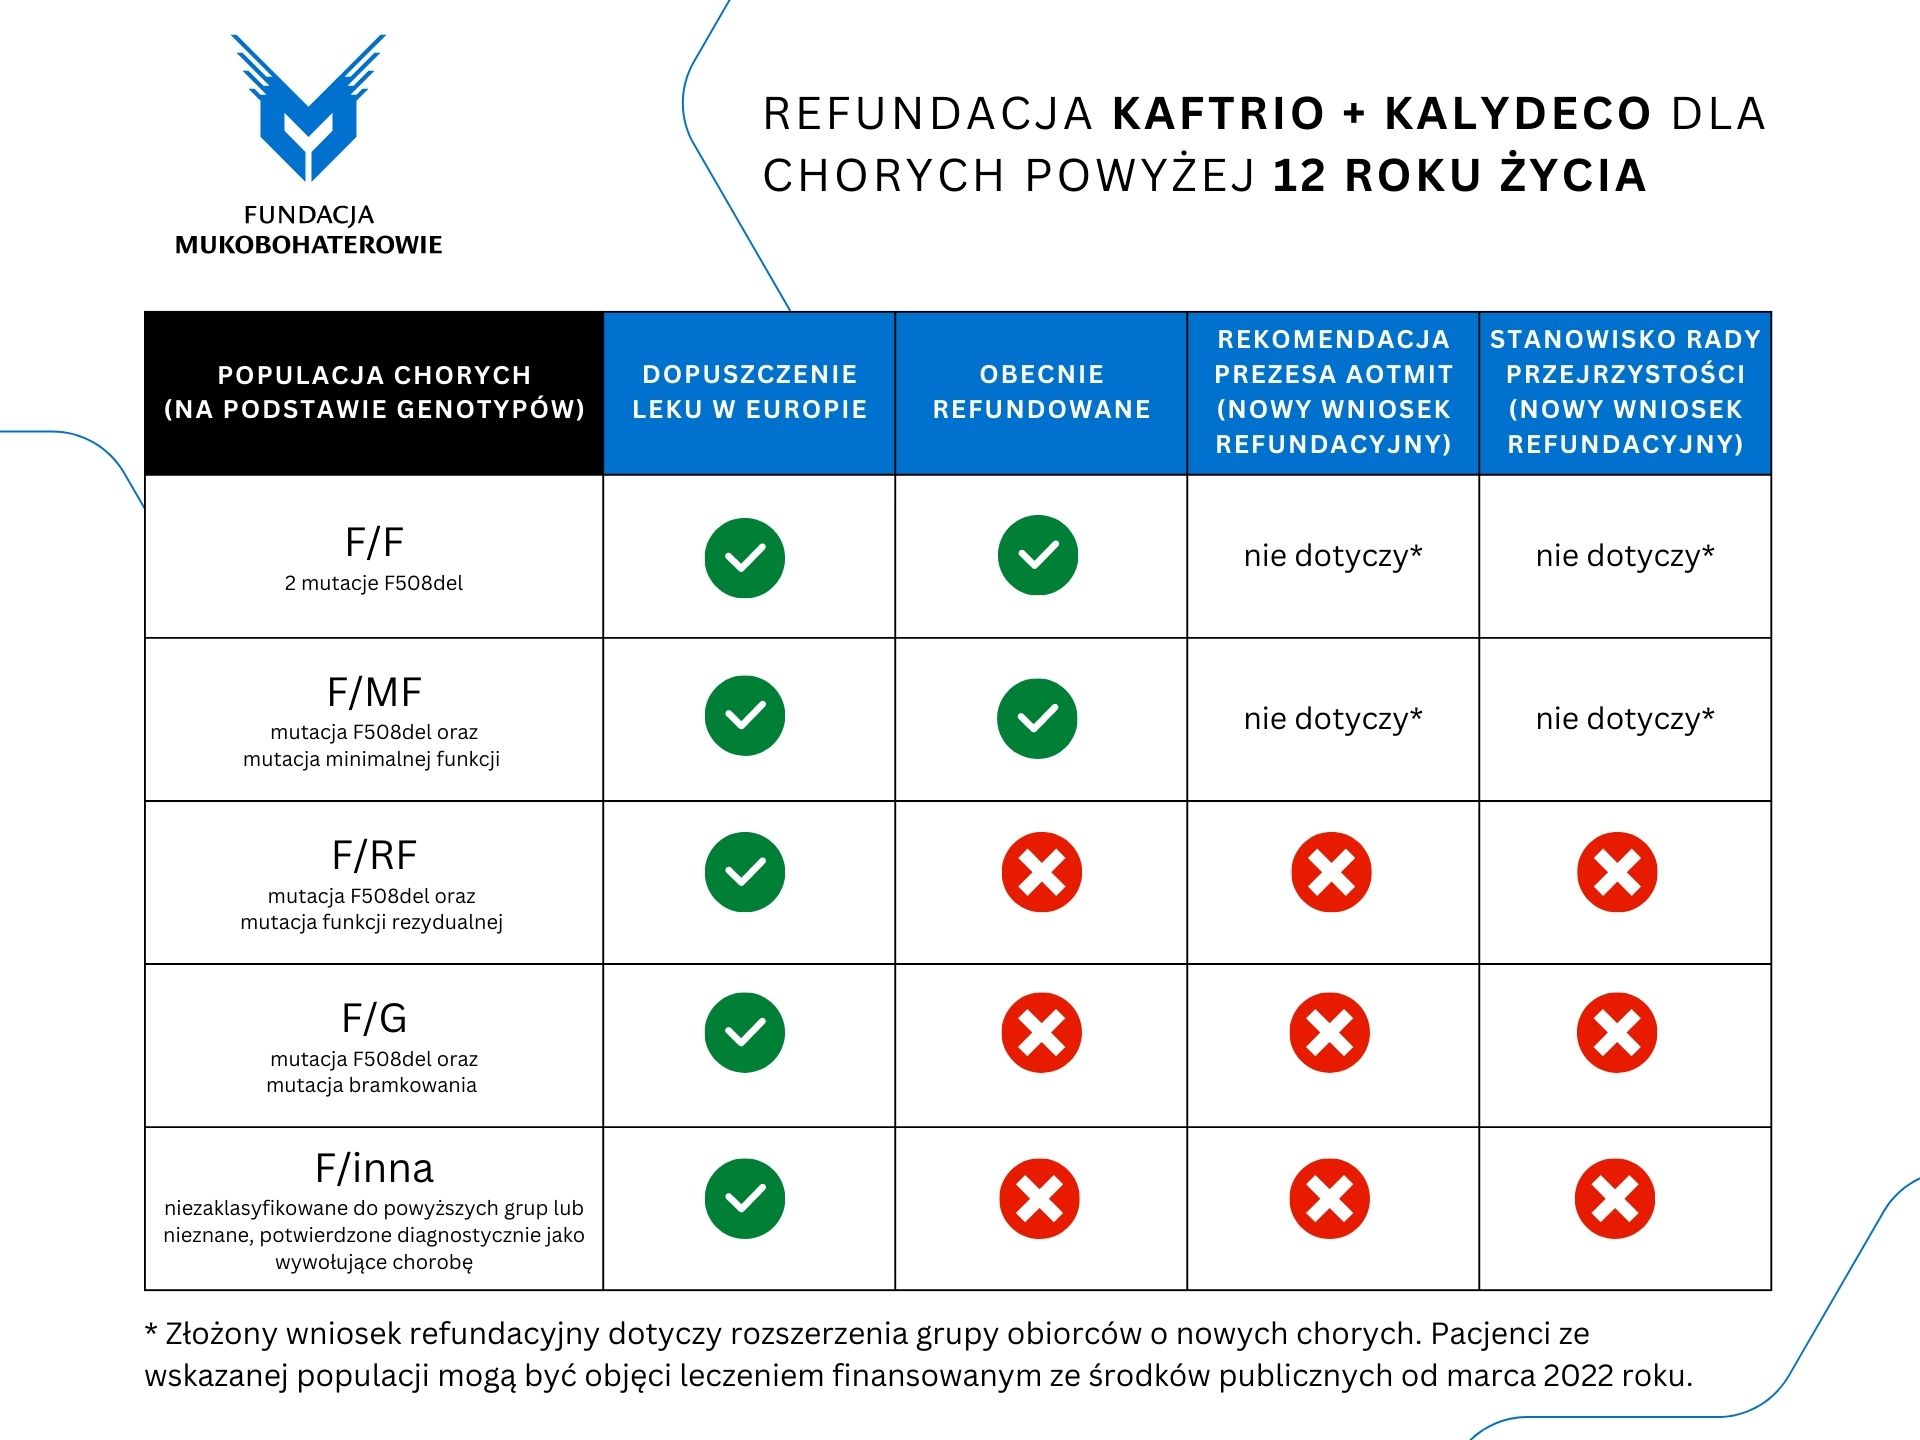 Refundacja Kaftrio + Kalydeco - tabela z decyzjami AOTMiT dotyczącymi chorych od 12 roku życia